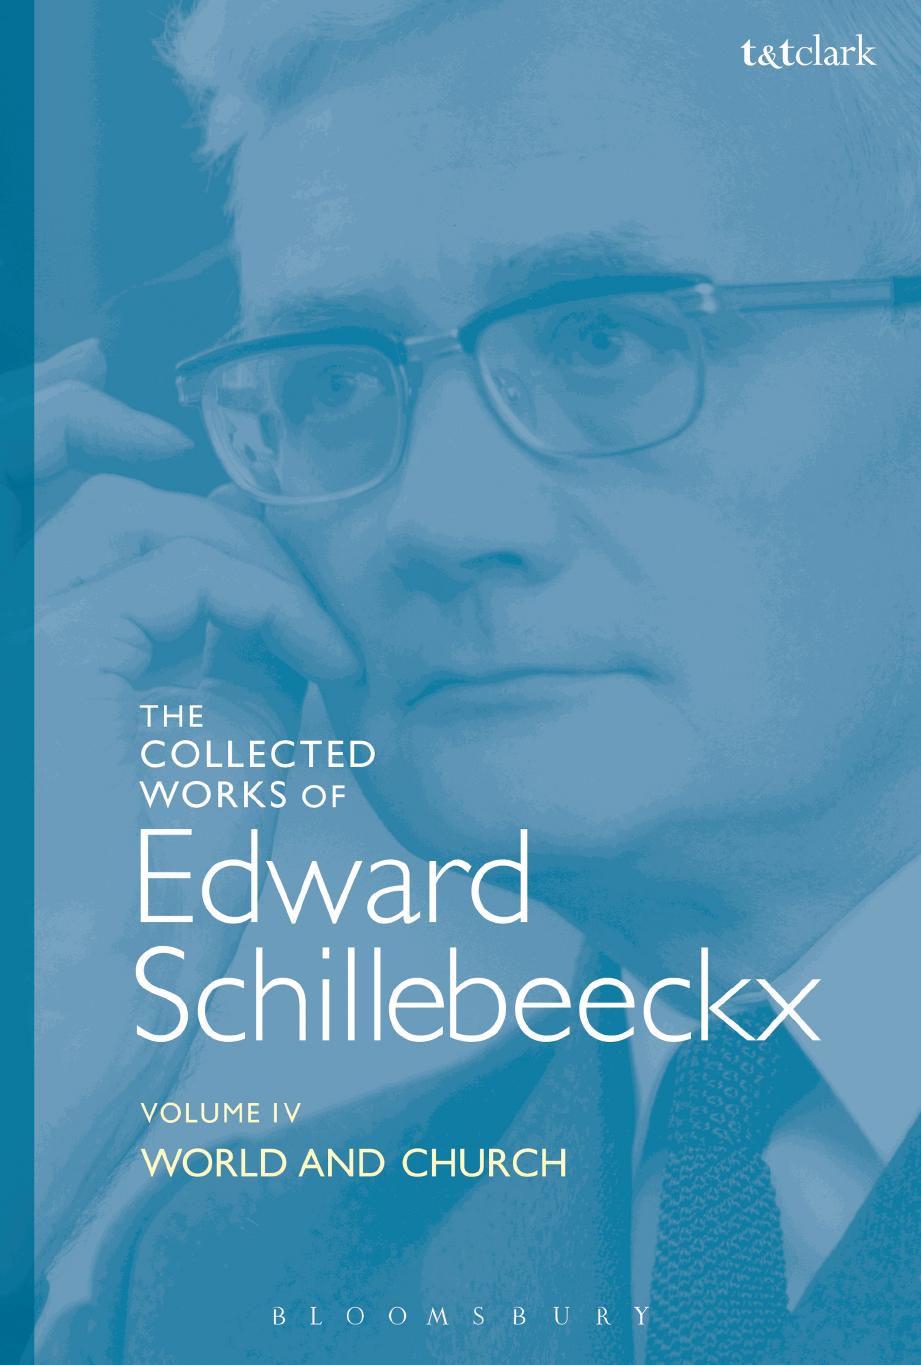 World and Church Volume IV by Edward Schillebeeckx